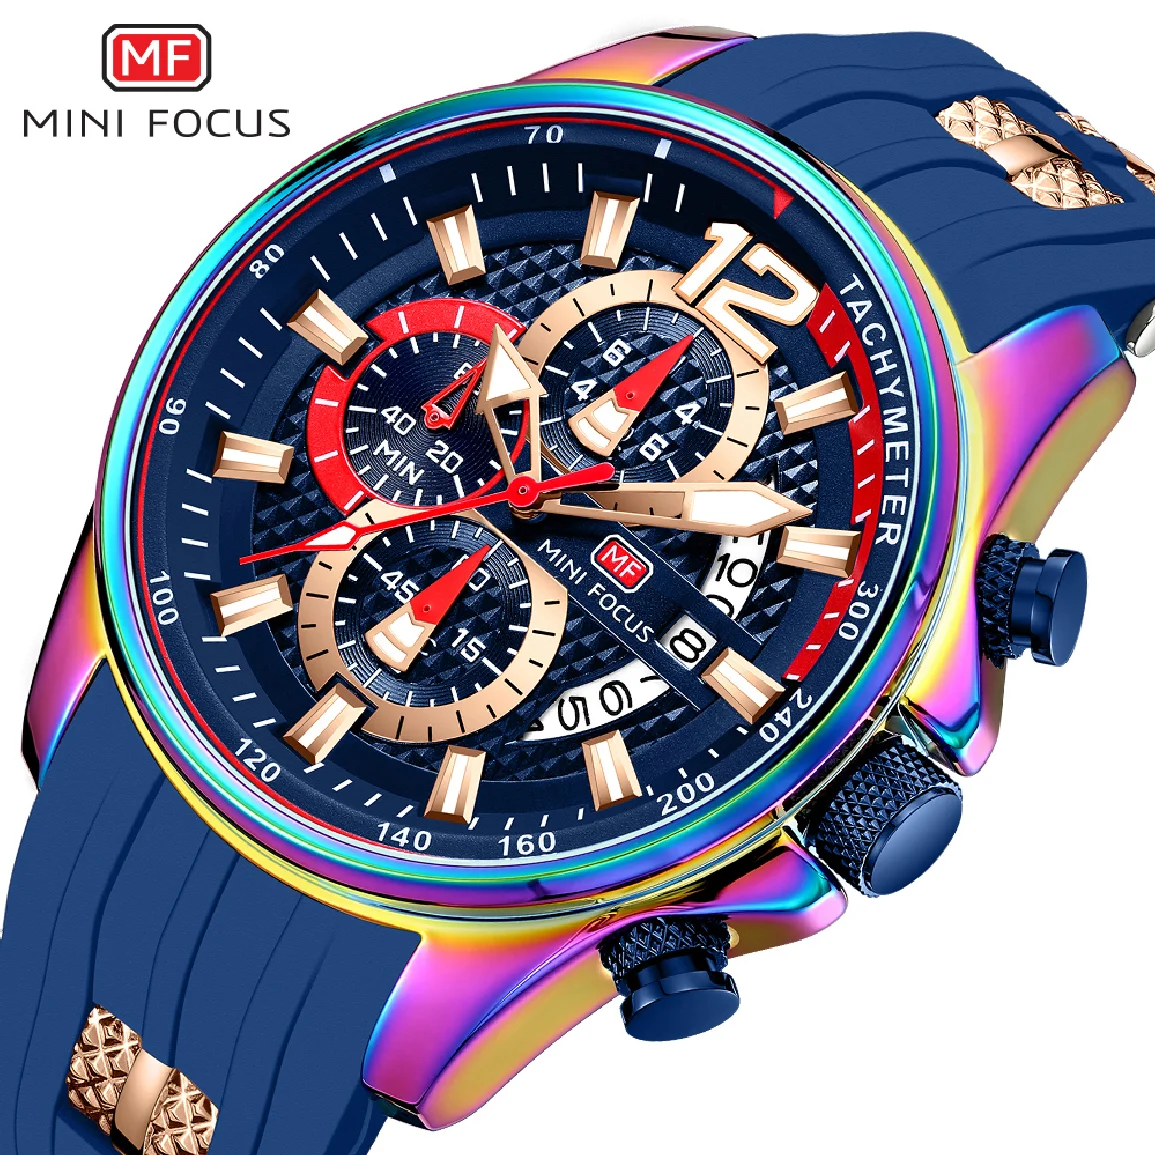 

Мужские повседневные спортивные часы MINIFOCUS Hyun-chae чехол лучший роскошный бренд мужские наручные часы с хронографом большой циферблат яркие ...